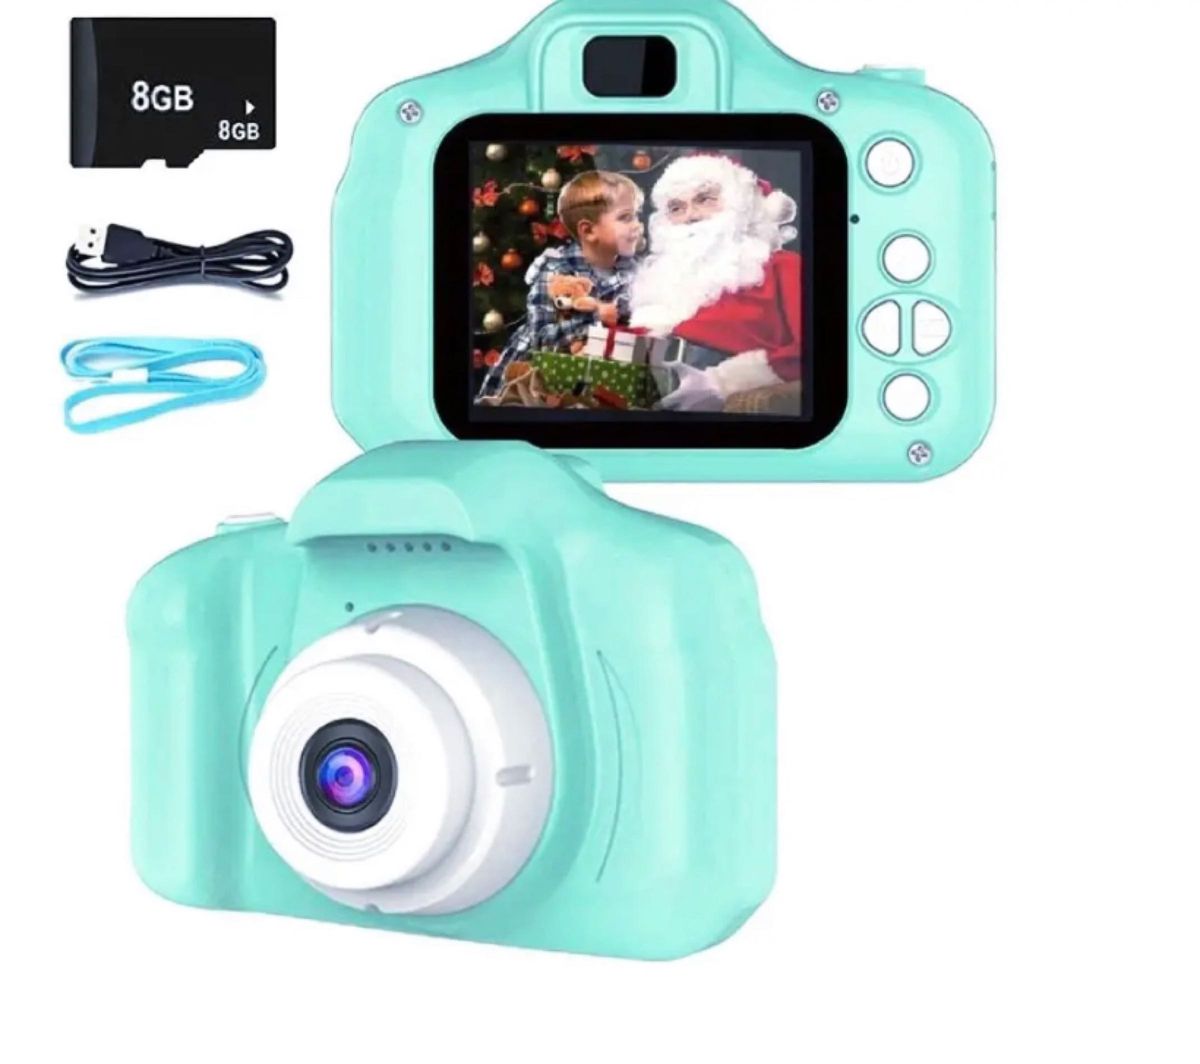 キッズカメラ 子供用デジタルカメラ トイカメラ SDカード プレゼント222 タイマー 動画